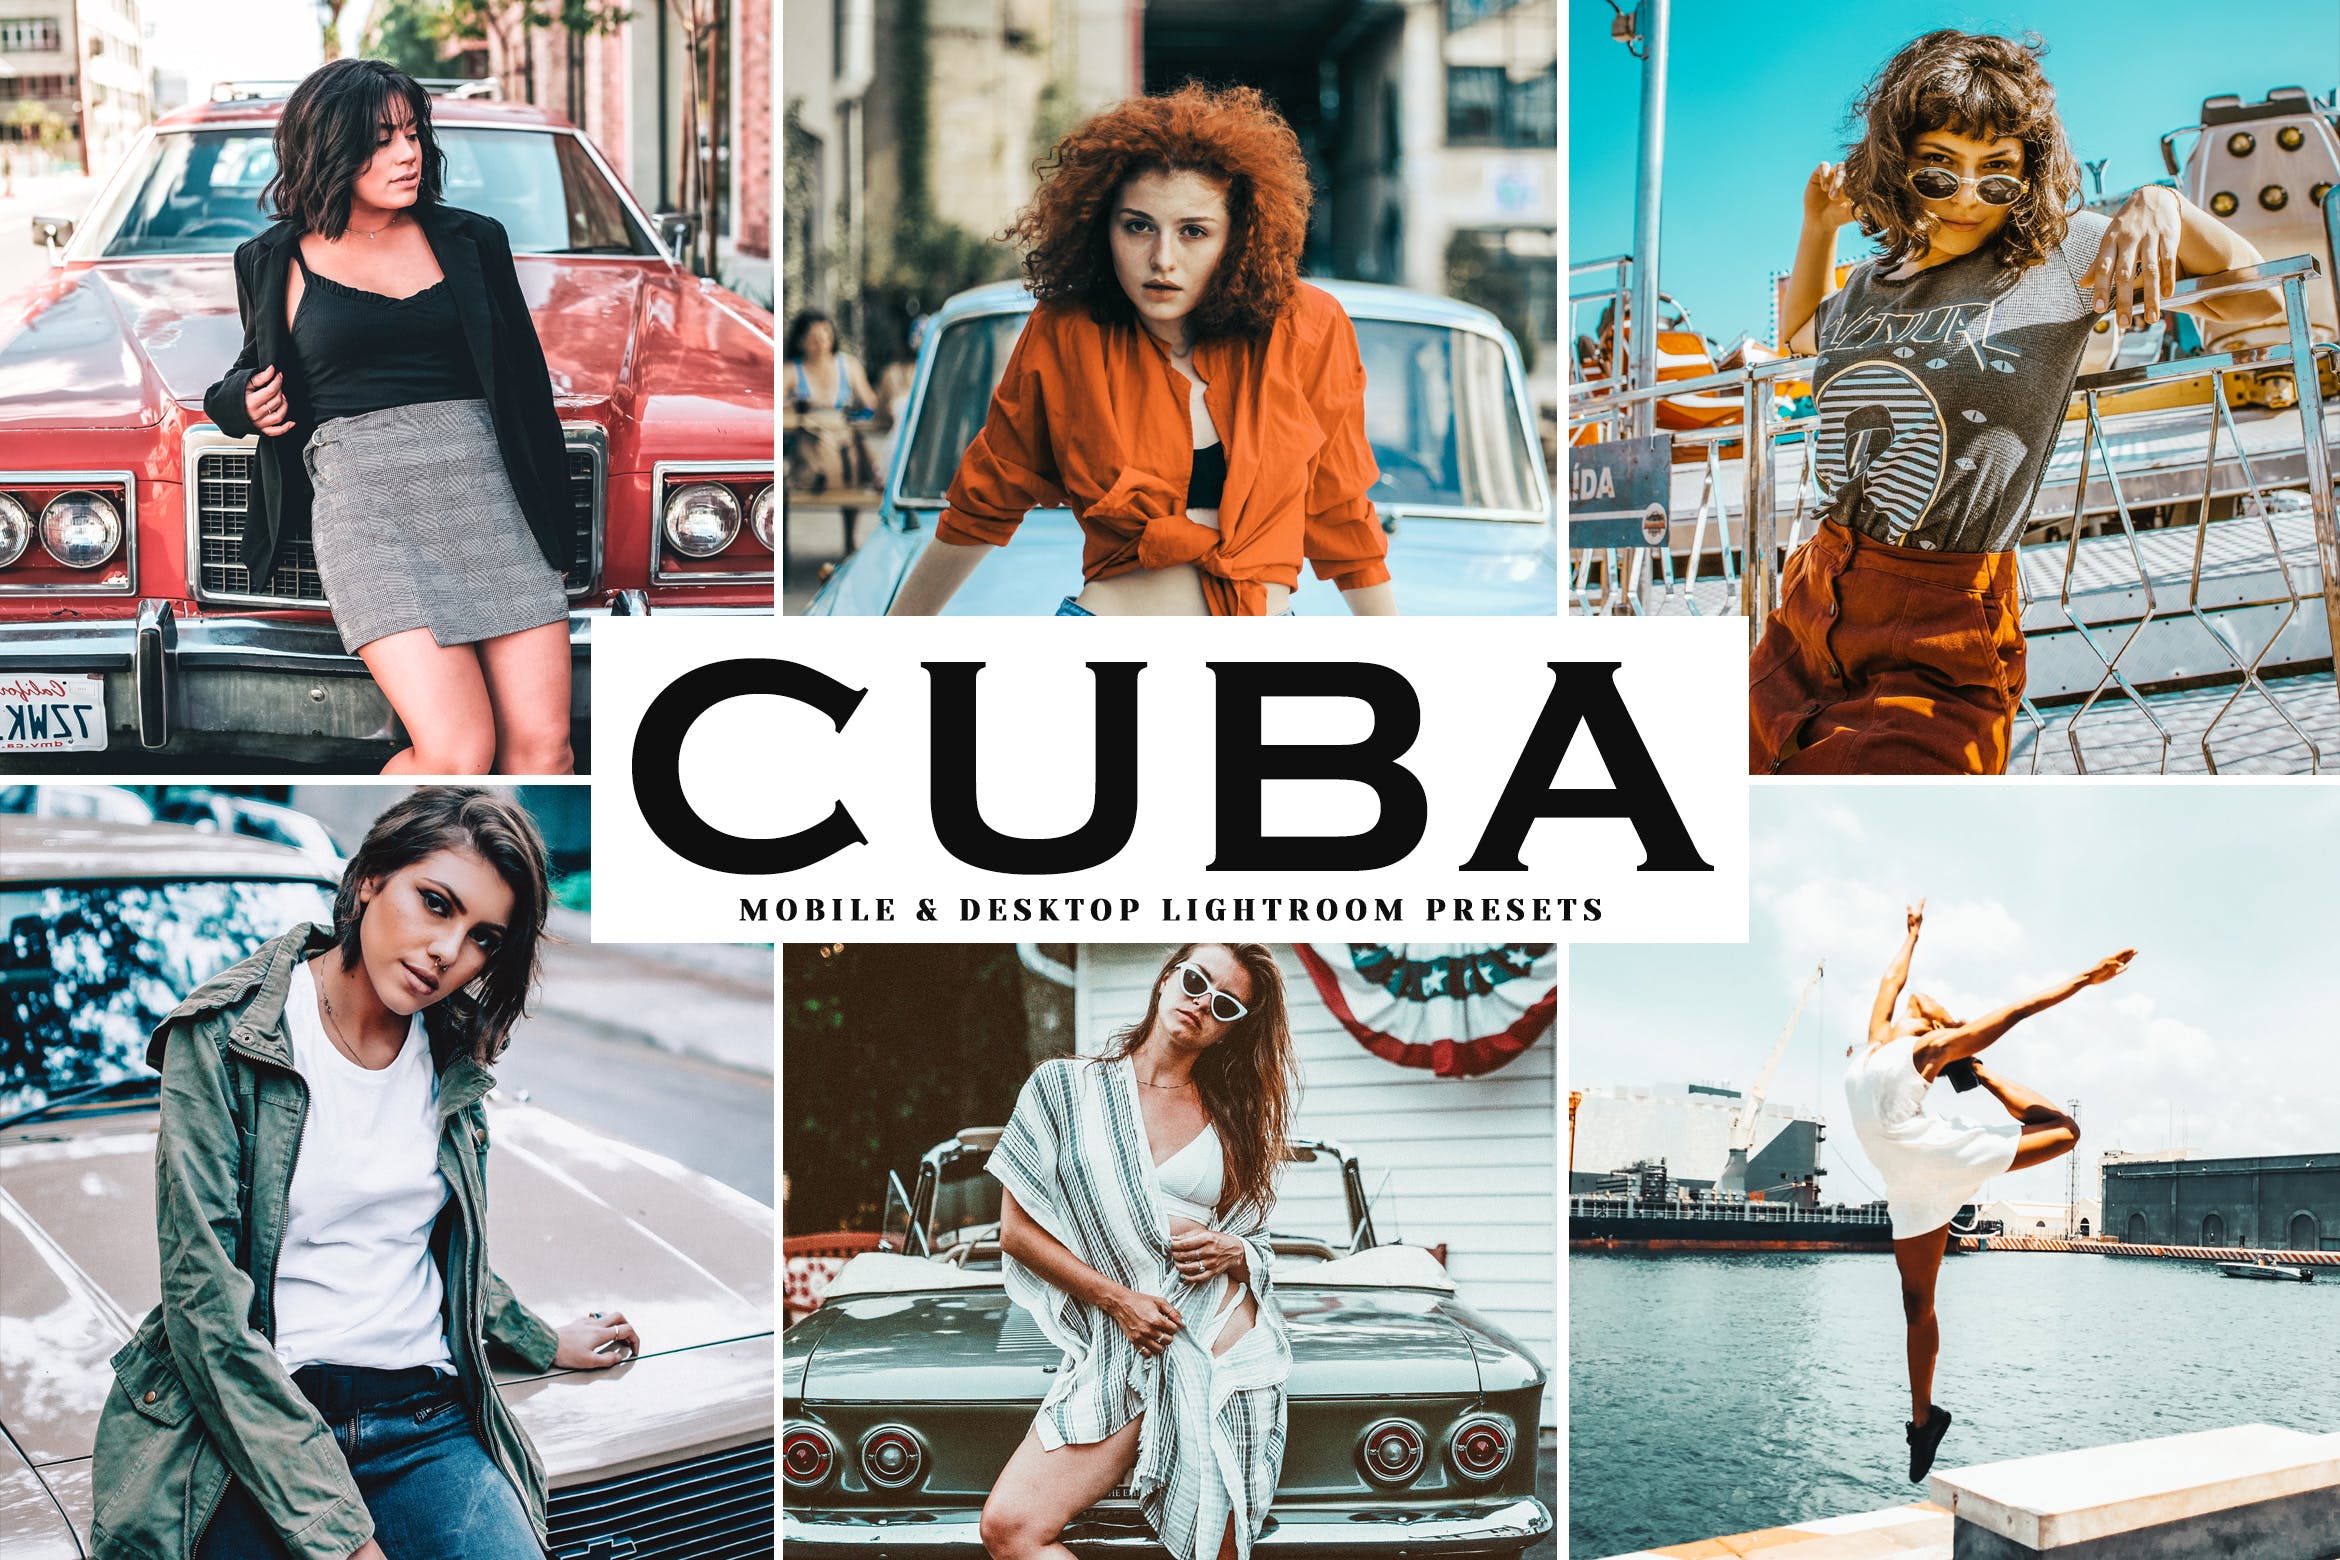 复古风格照片调色滤镜素材库精选LR预设 Cuba Mobile & Desktop Lightroom Presets插图